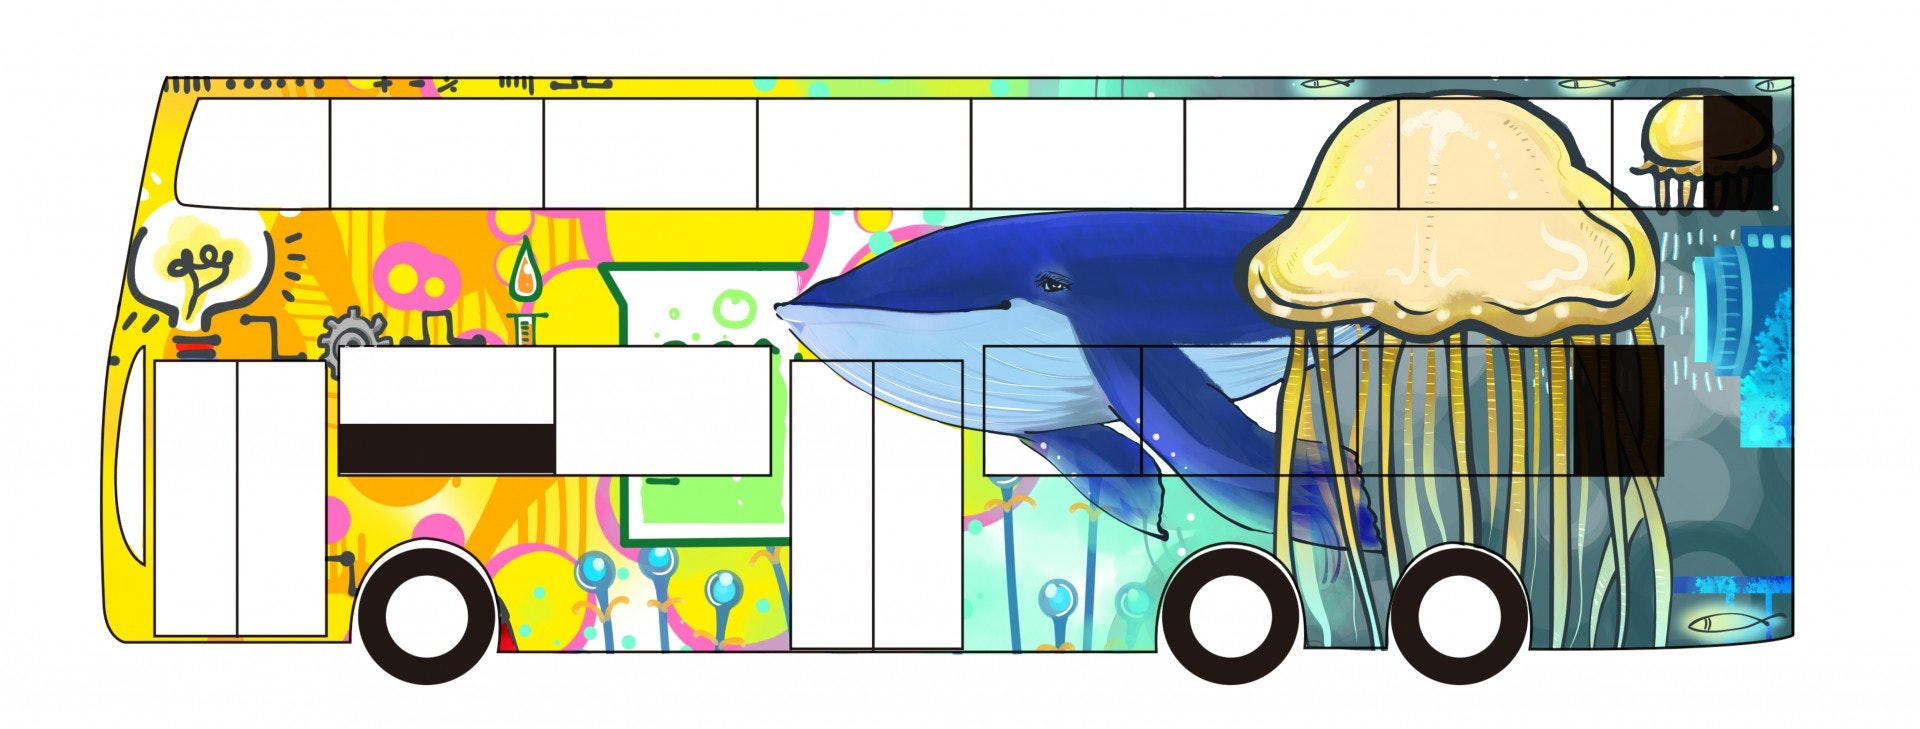 瑩瑩設計了多張巴士插畫，顏色多元，亦有不少大自然景色，希望帶出夢想、團結等意思。（九巴提供相片）